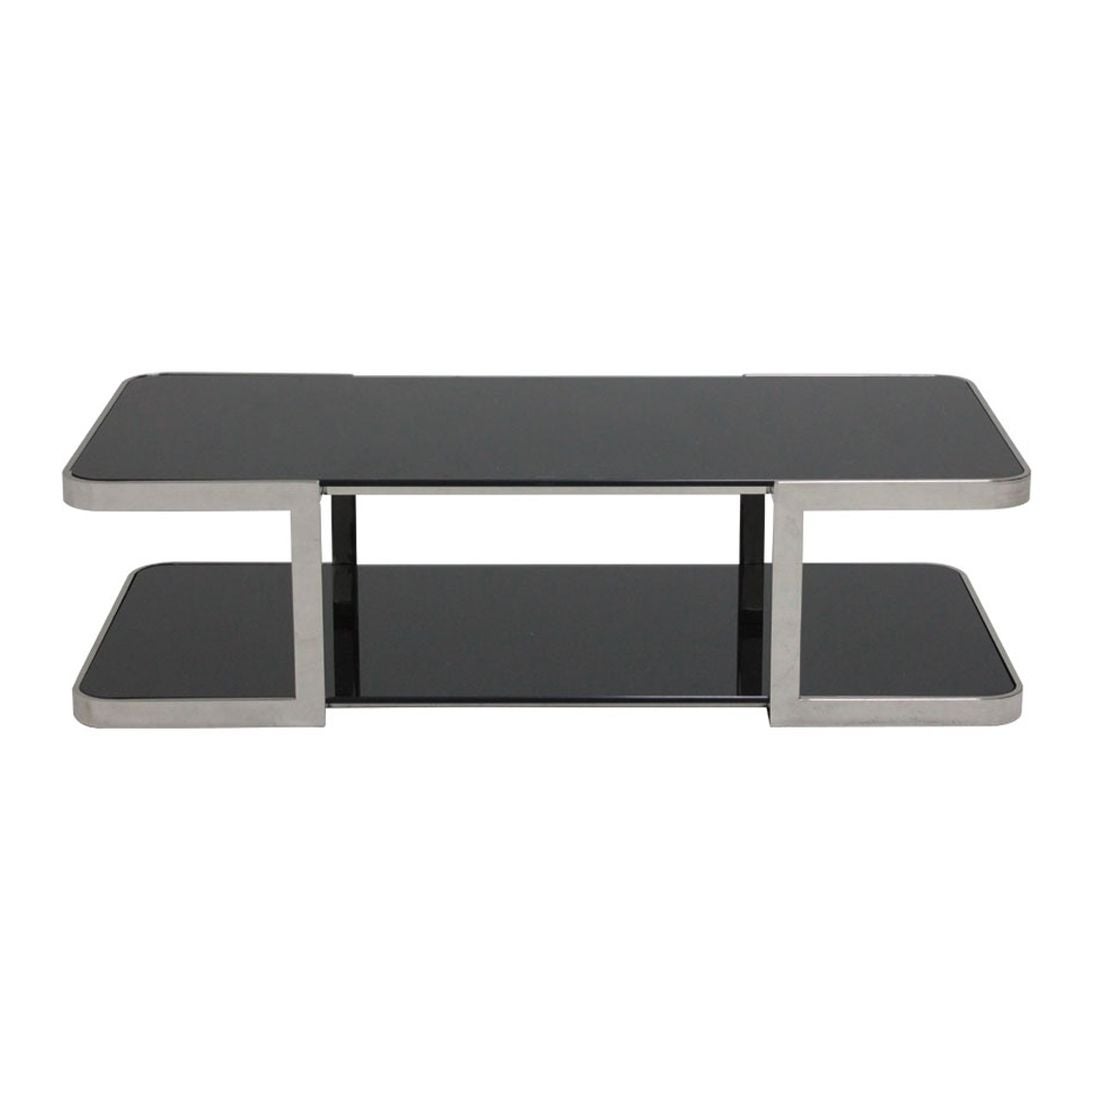 โต๊ะกลาง โต๊ะกลางเหล็กท๊อปกระจก รุ่น Jacinda-SB Design Square